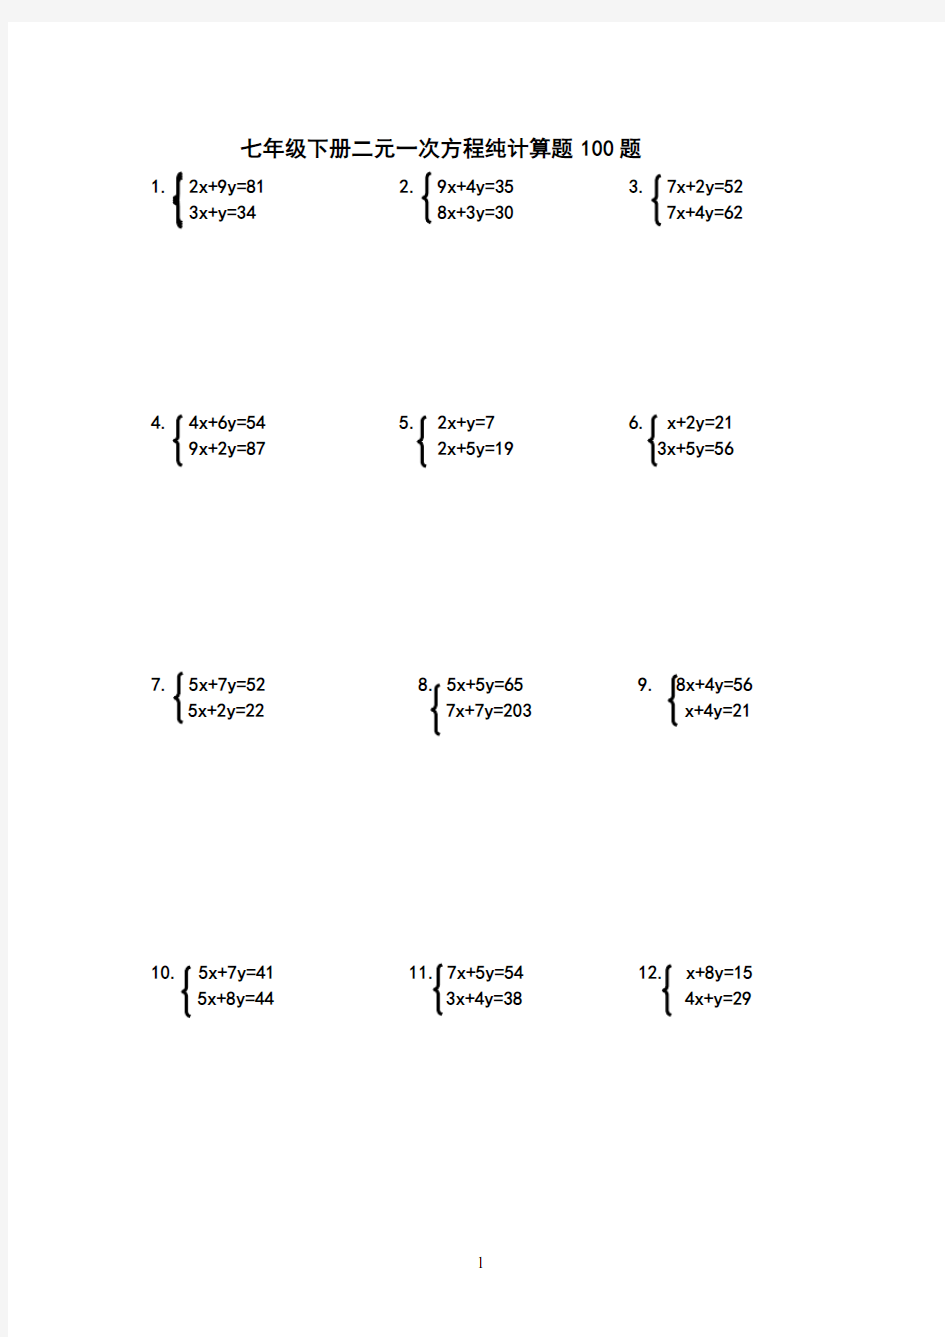 (完整)七年级下册二元一次方程纯计算题100题